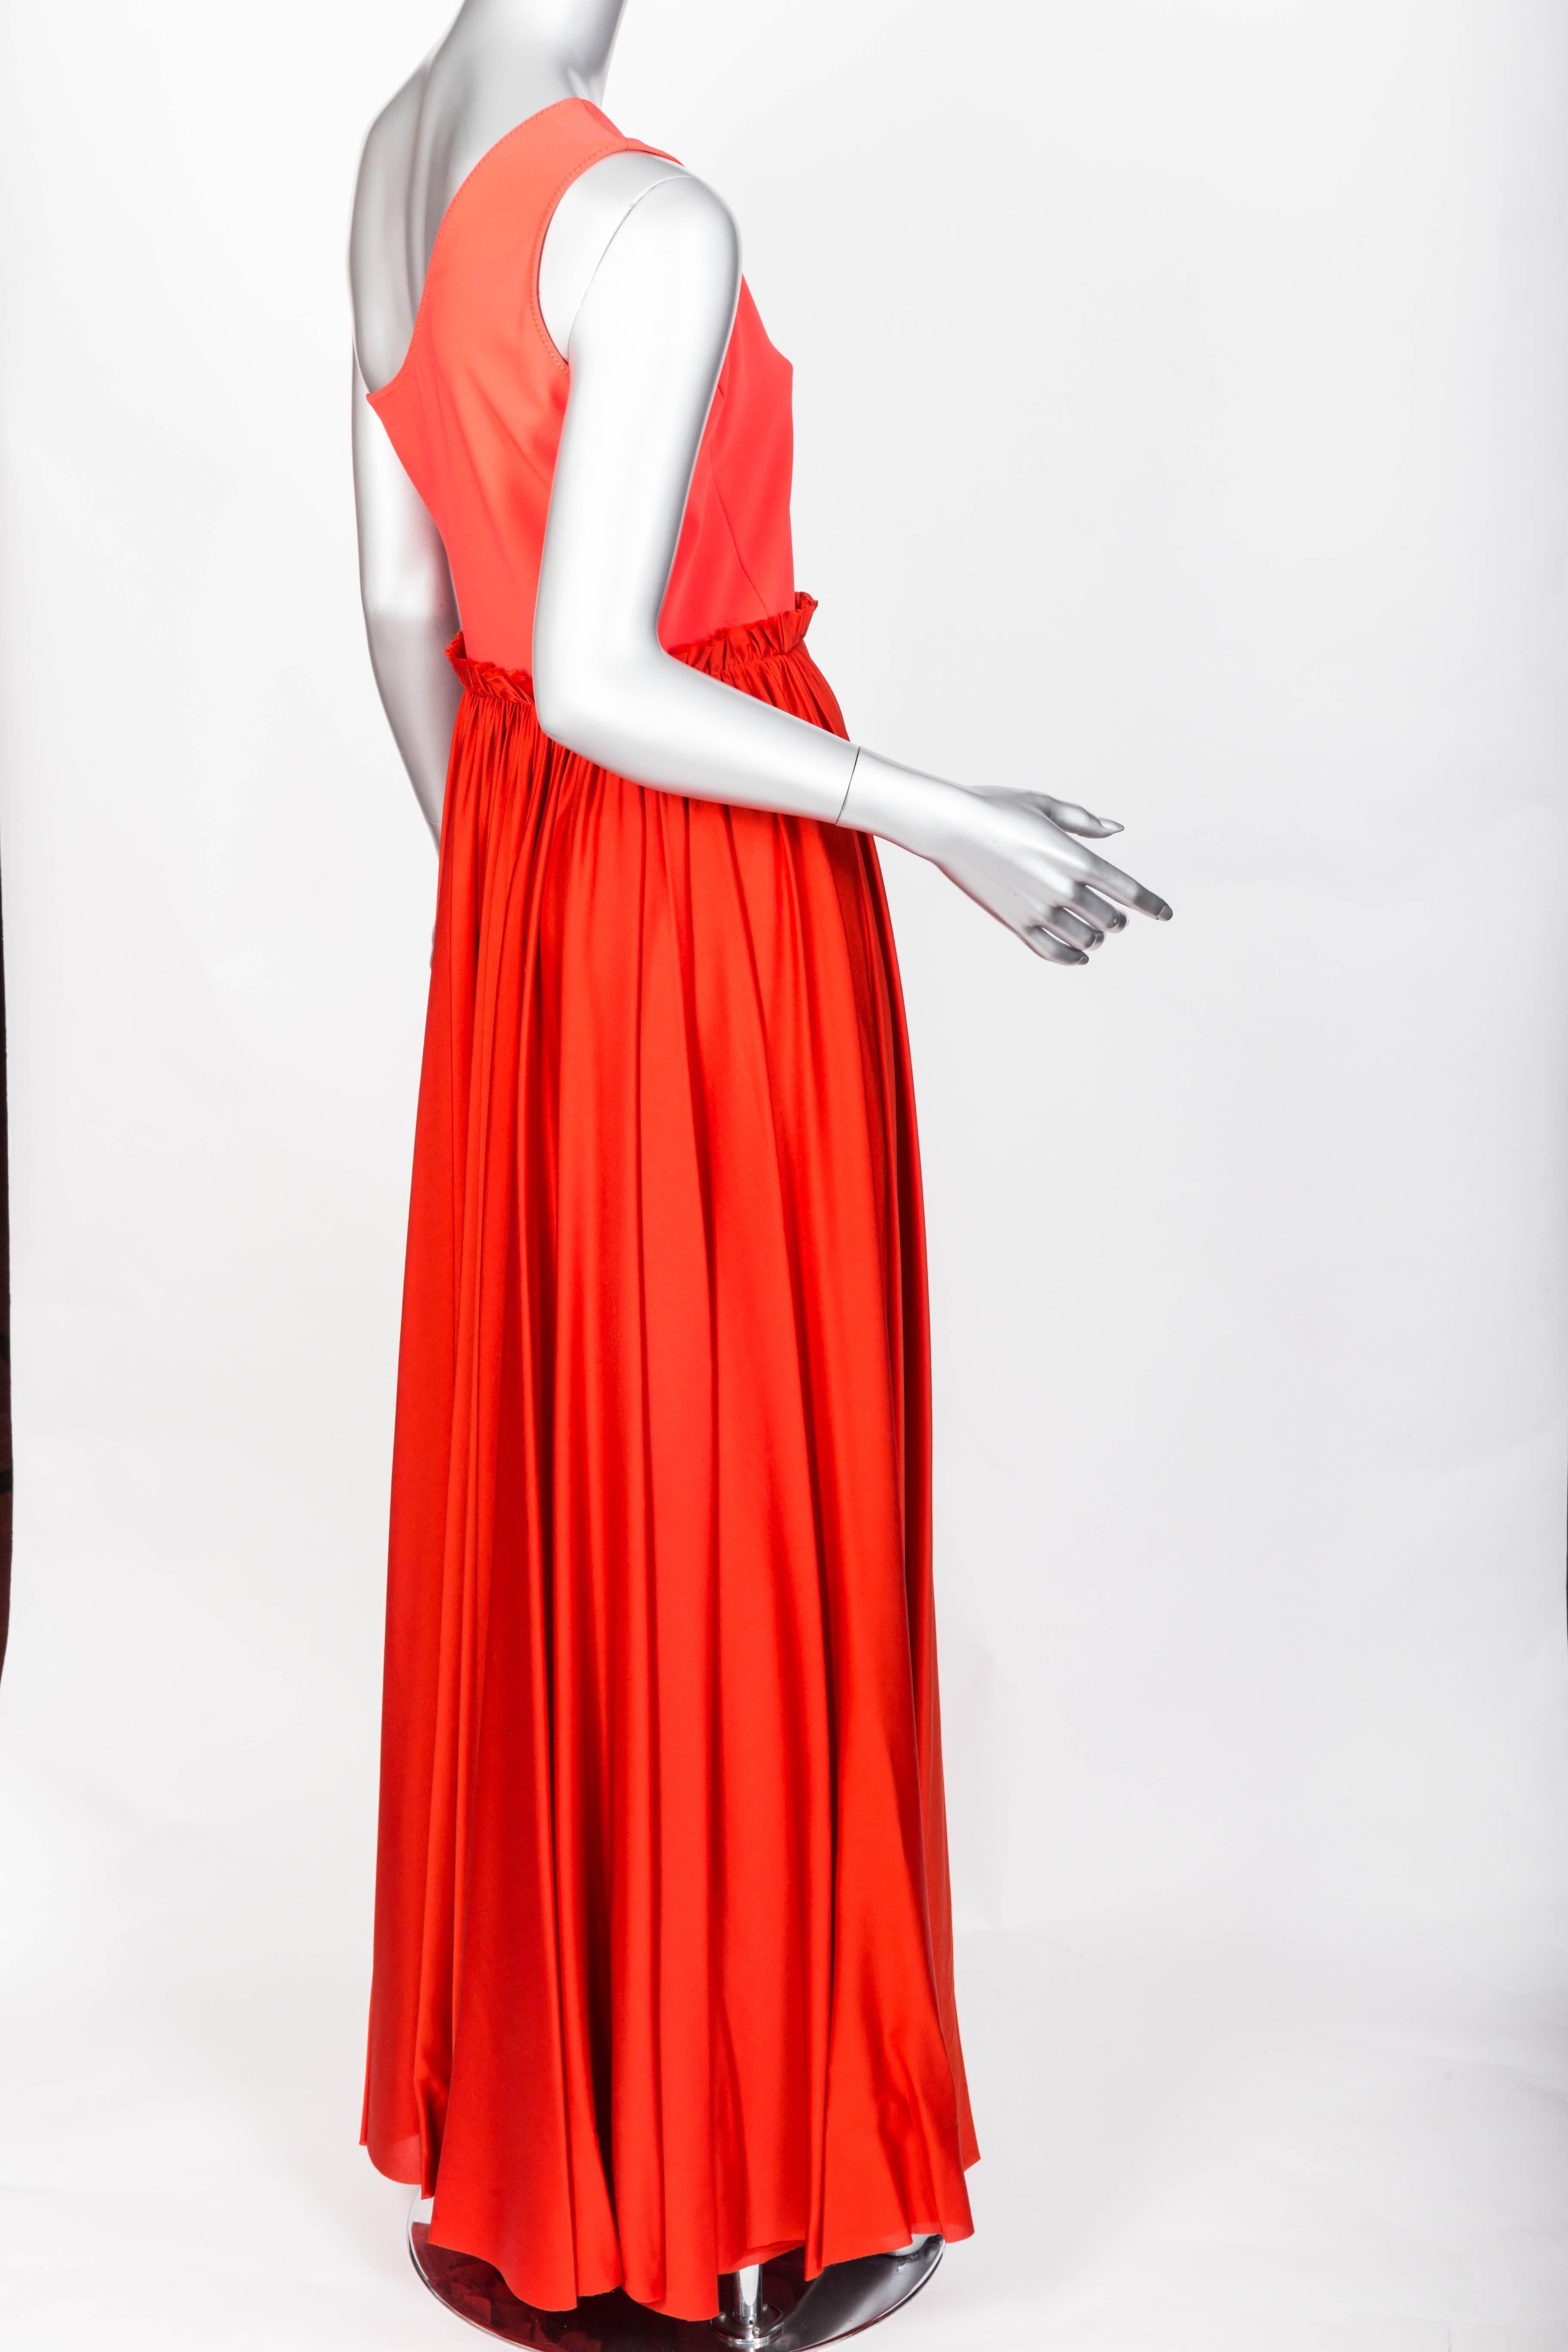 Red Lanvin One Shoulder Silk Gown in Pumpkin Orange, Size 40